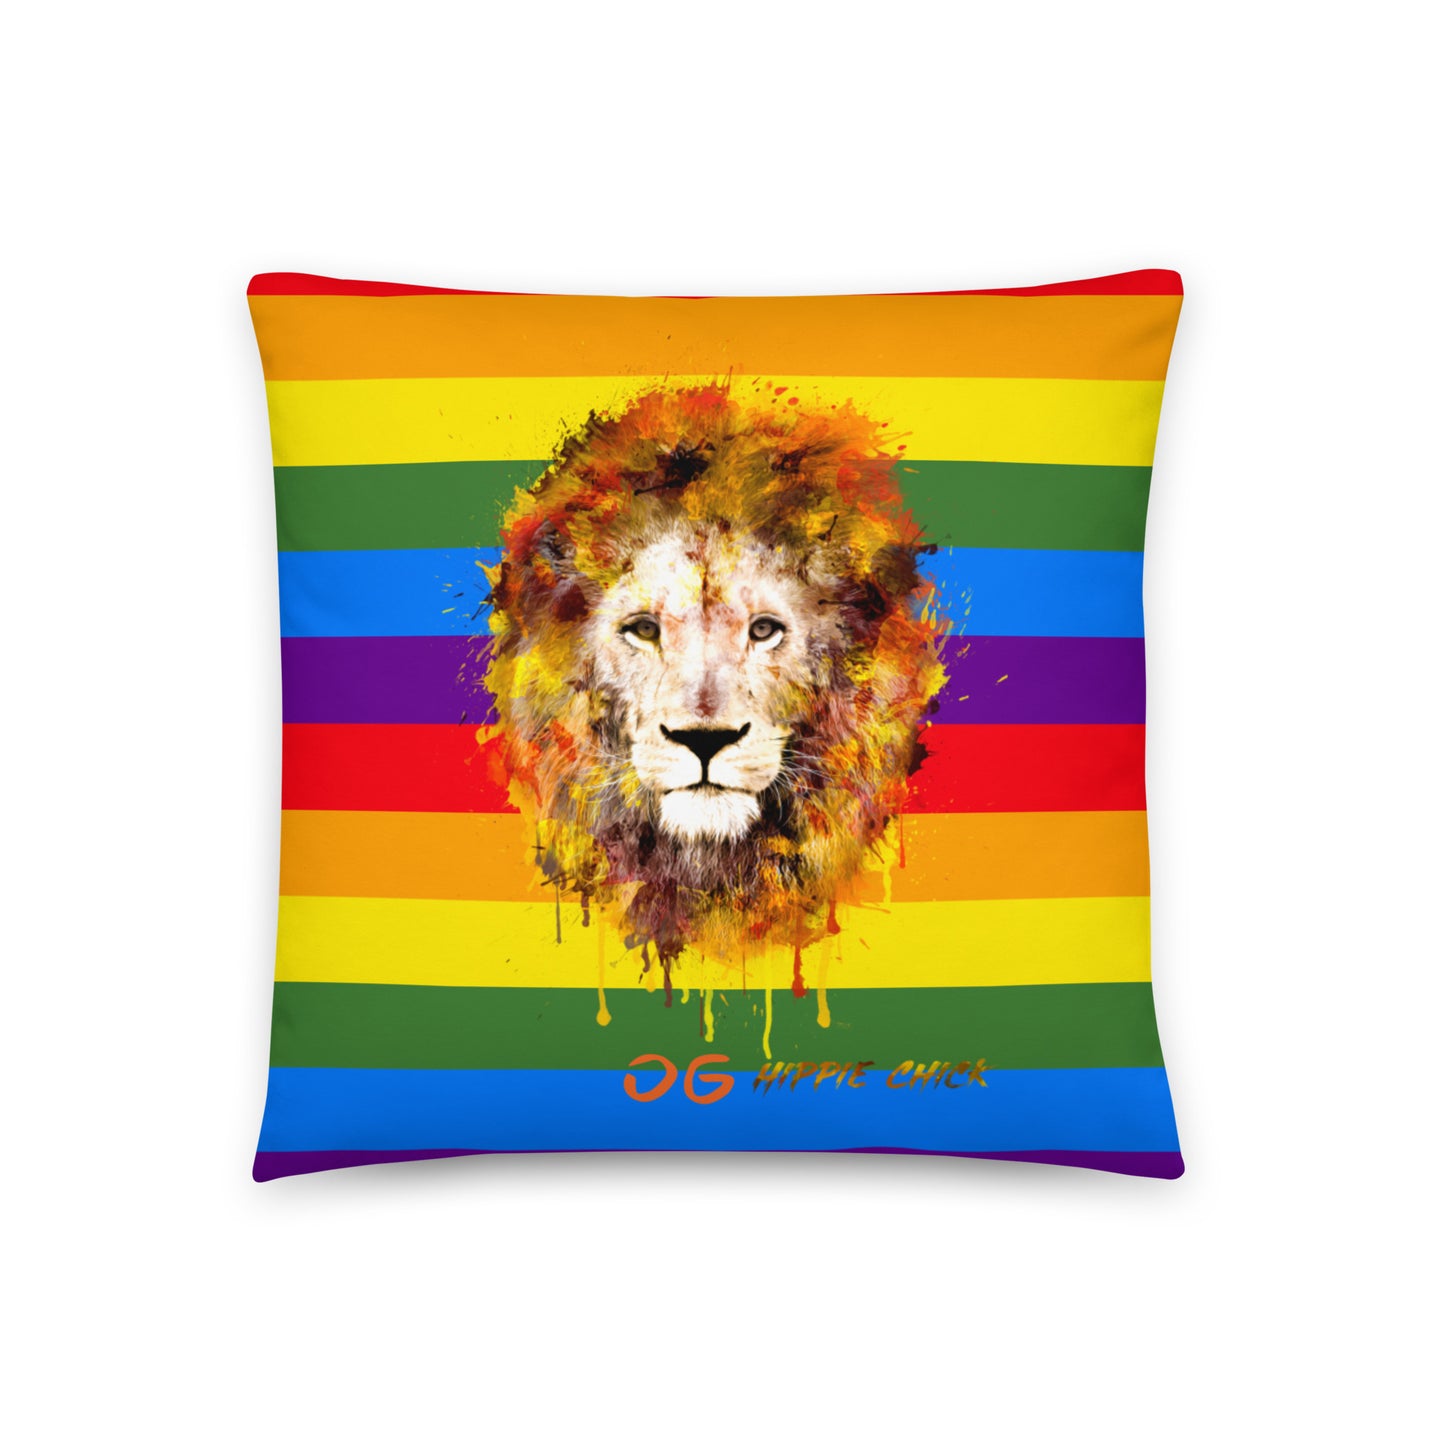 Rainbow Pillows